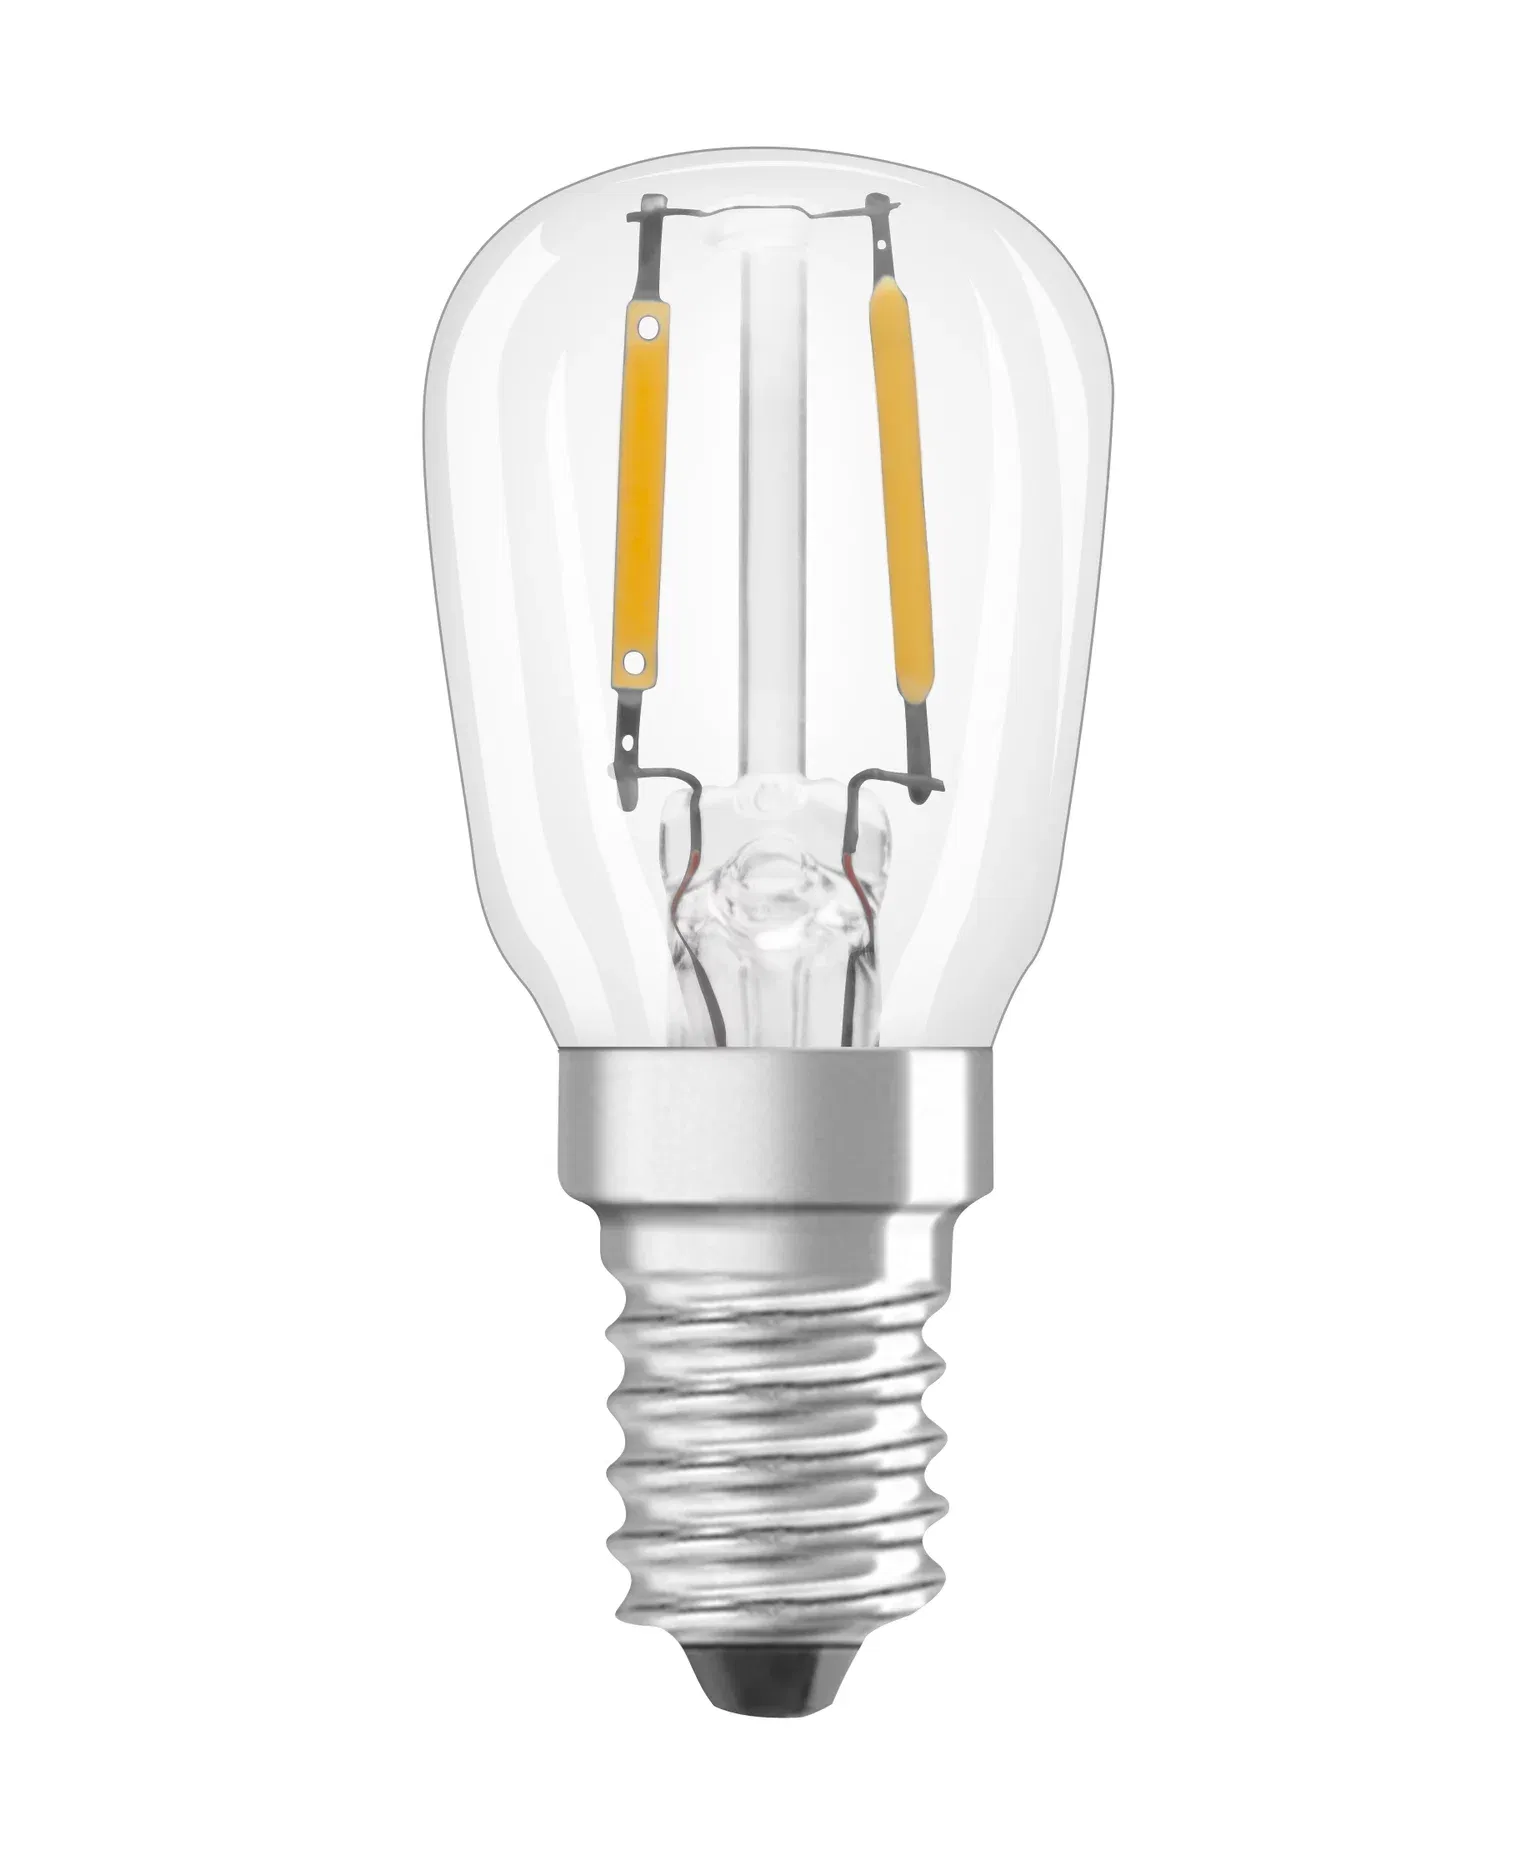 LED lemputė OSRAM Special T26 12, šaldytuvui, E14, 2,2W, 2700 K, 110 lm, šiltai baltos sp. - 2